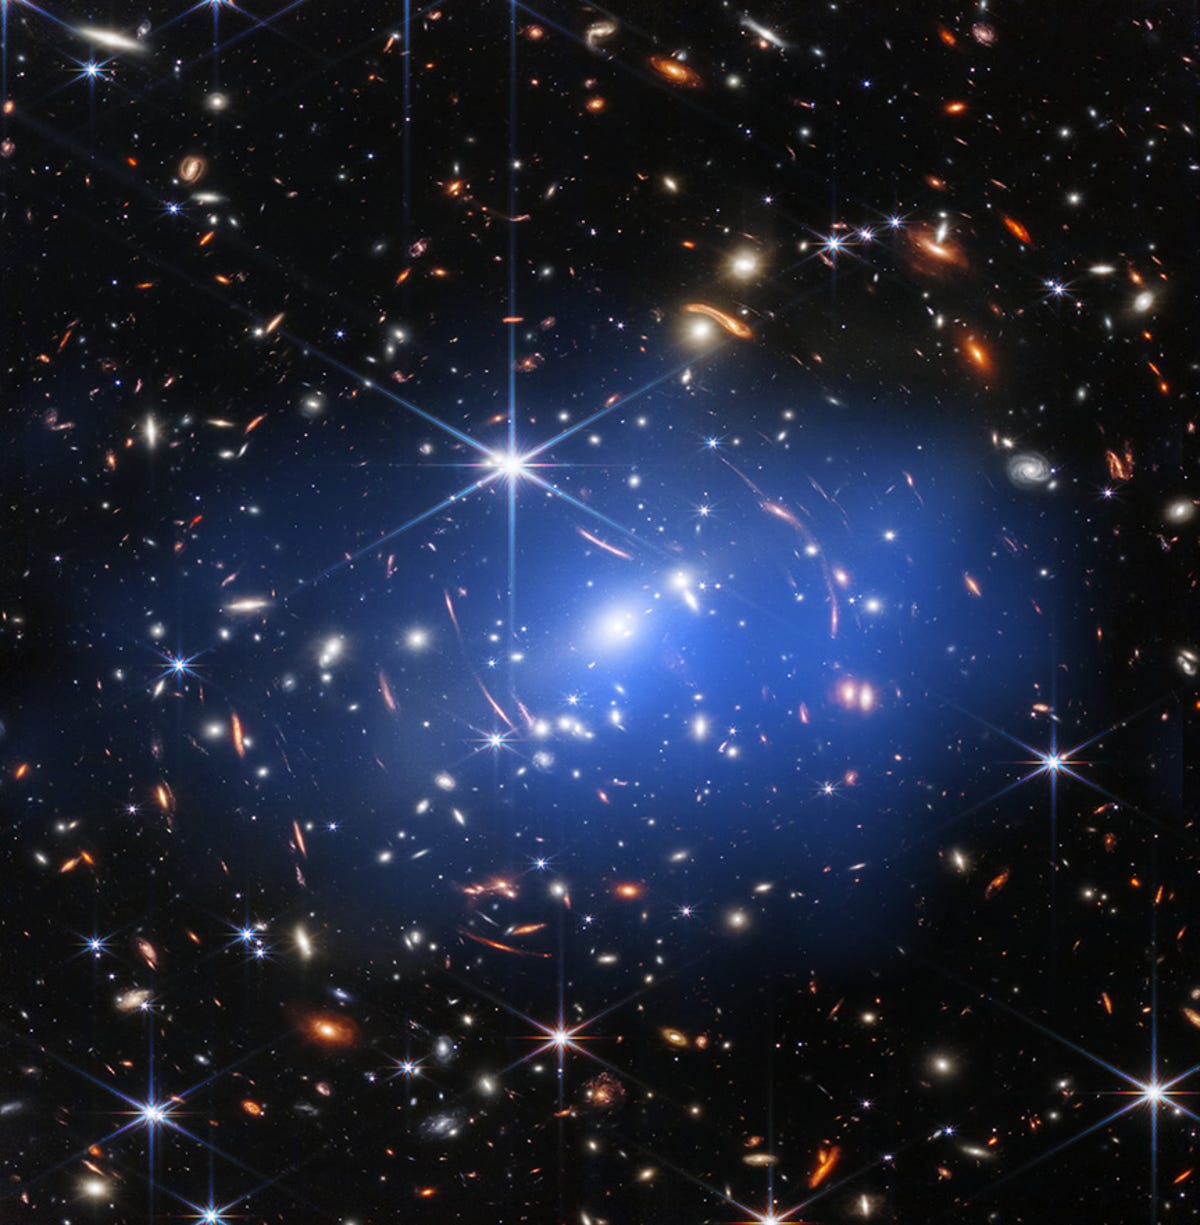 A lo largo de la paleta oscura del espacio se encuentran muchos parches coloridos que representan galaxias.  Muchos de ellos parecen rayas porque están distorsionados desde nuestro punto de vista por la lente gravitacional.  En el centro hay una neblina azulada que representa las notas de Chandra.